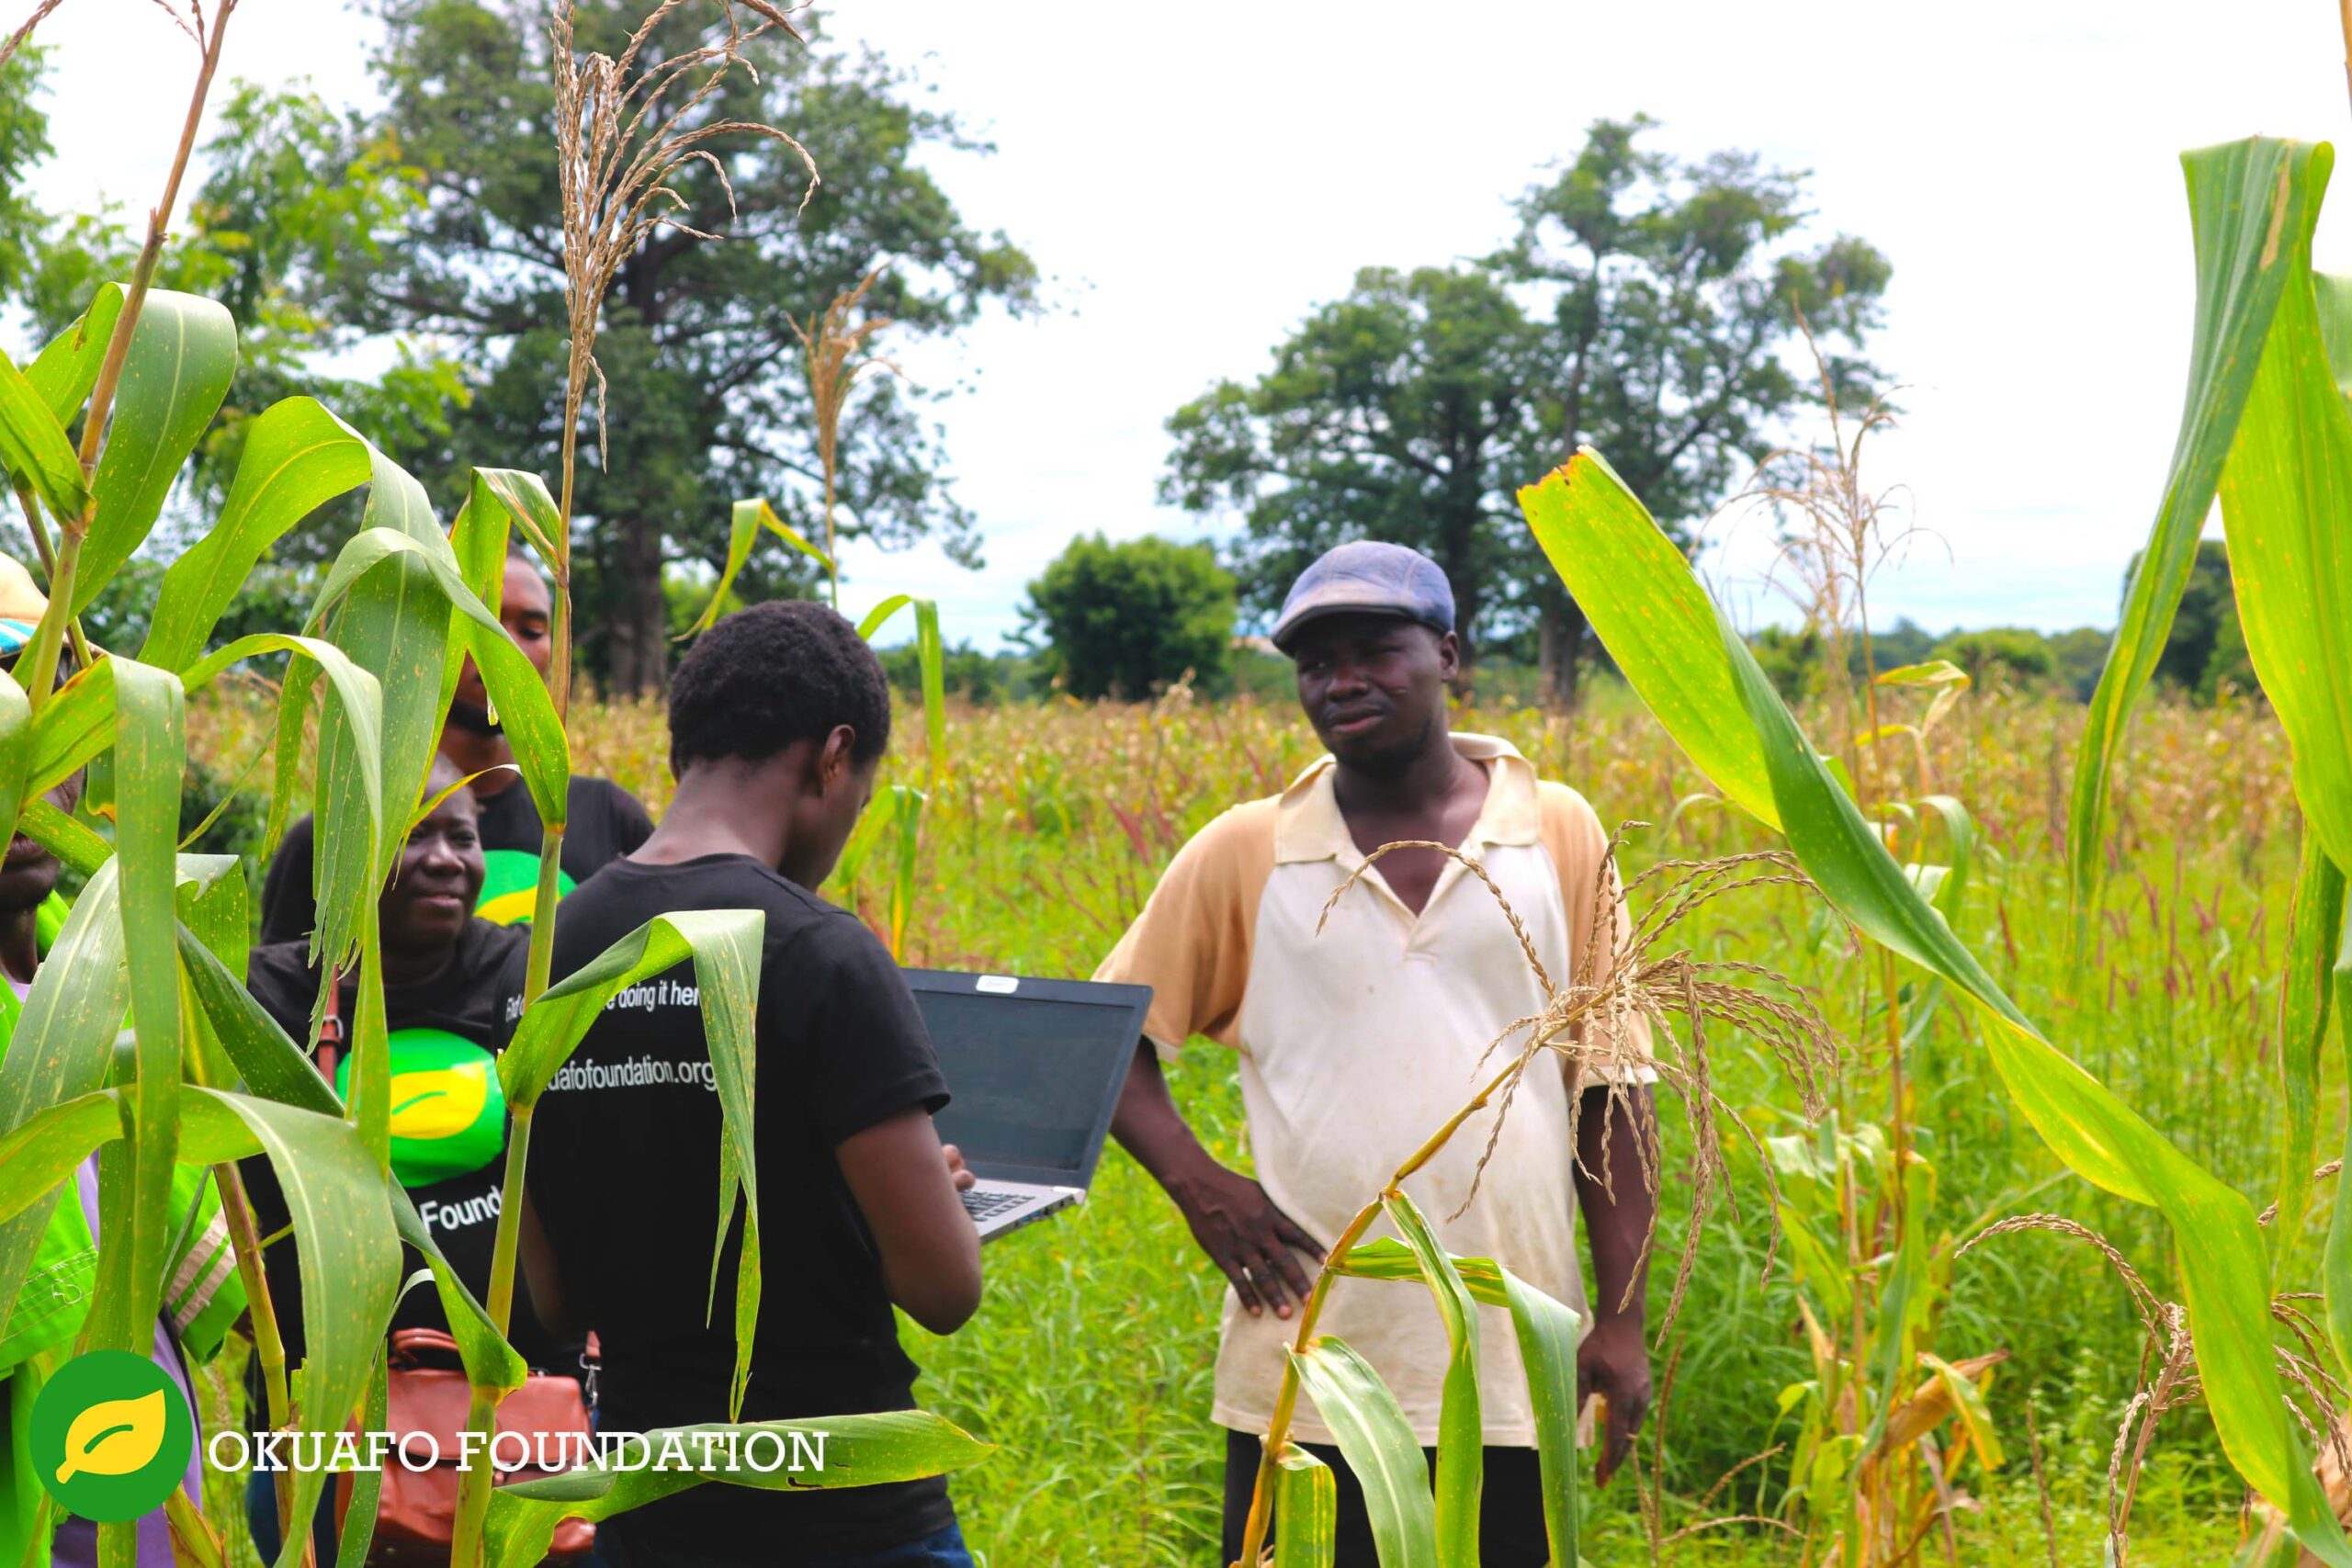 Entrevista a Mustapha Diyaol-Haqq, el adolescente ghanés que inventó una App para ayudar a los pequeños agricultores